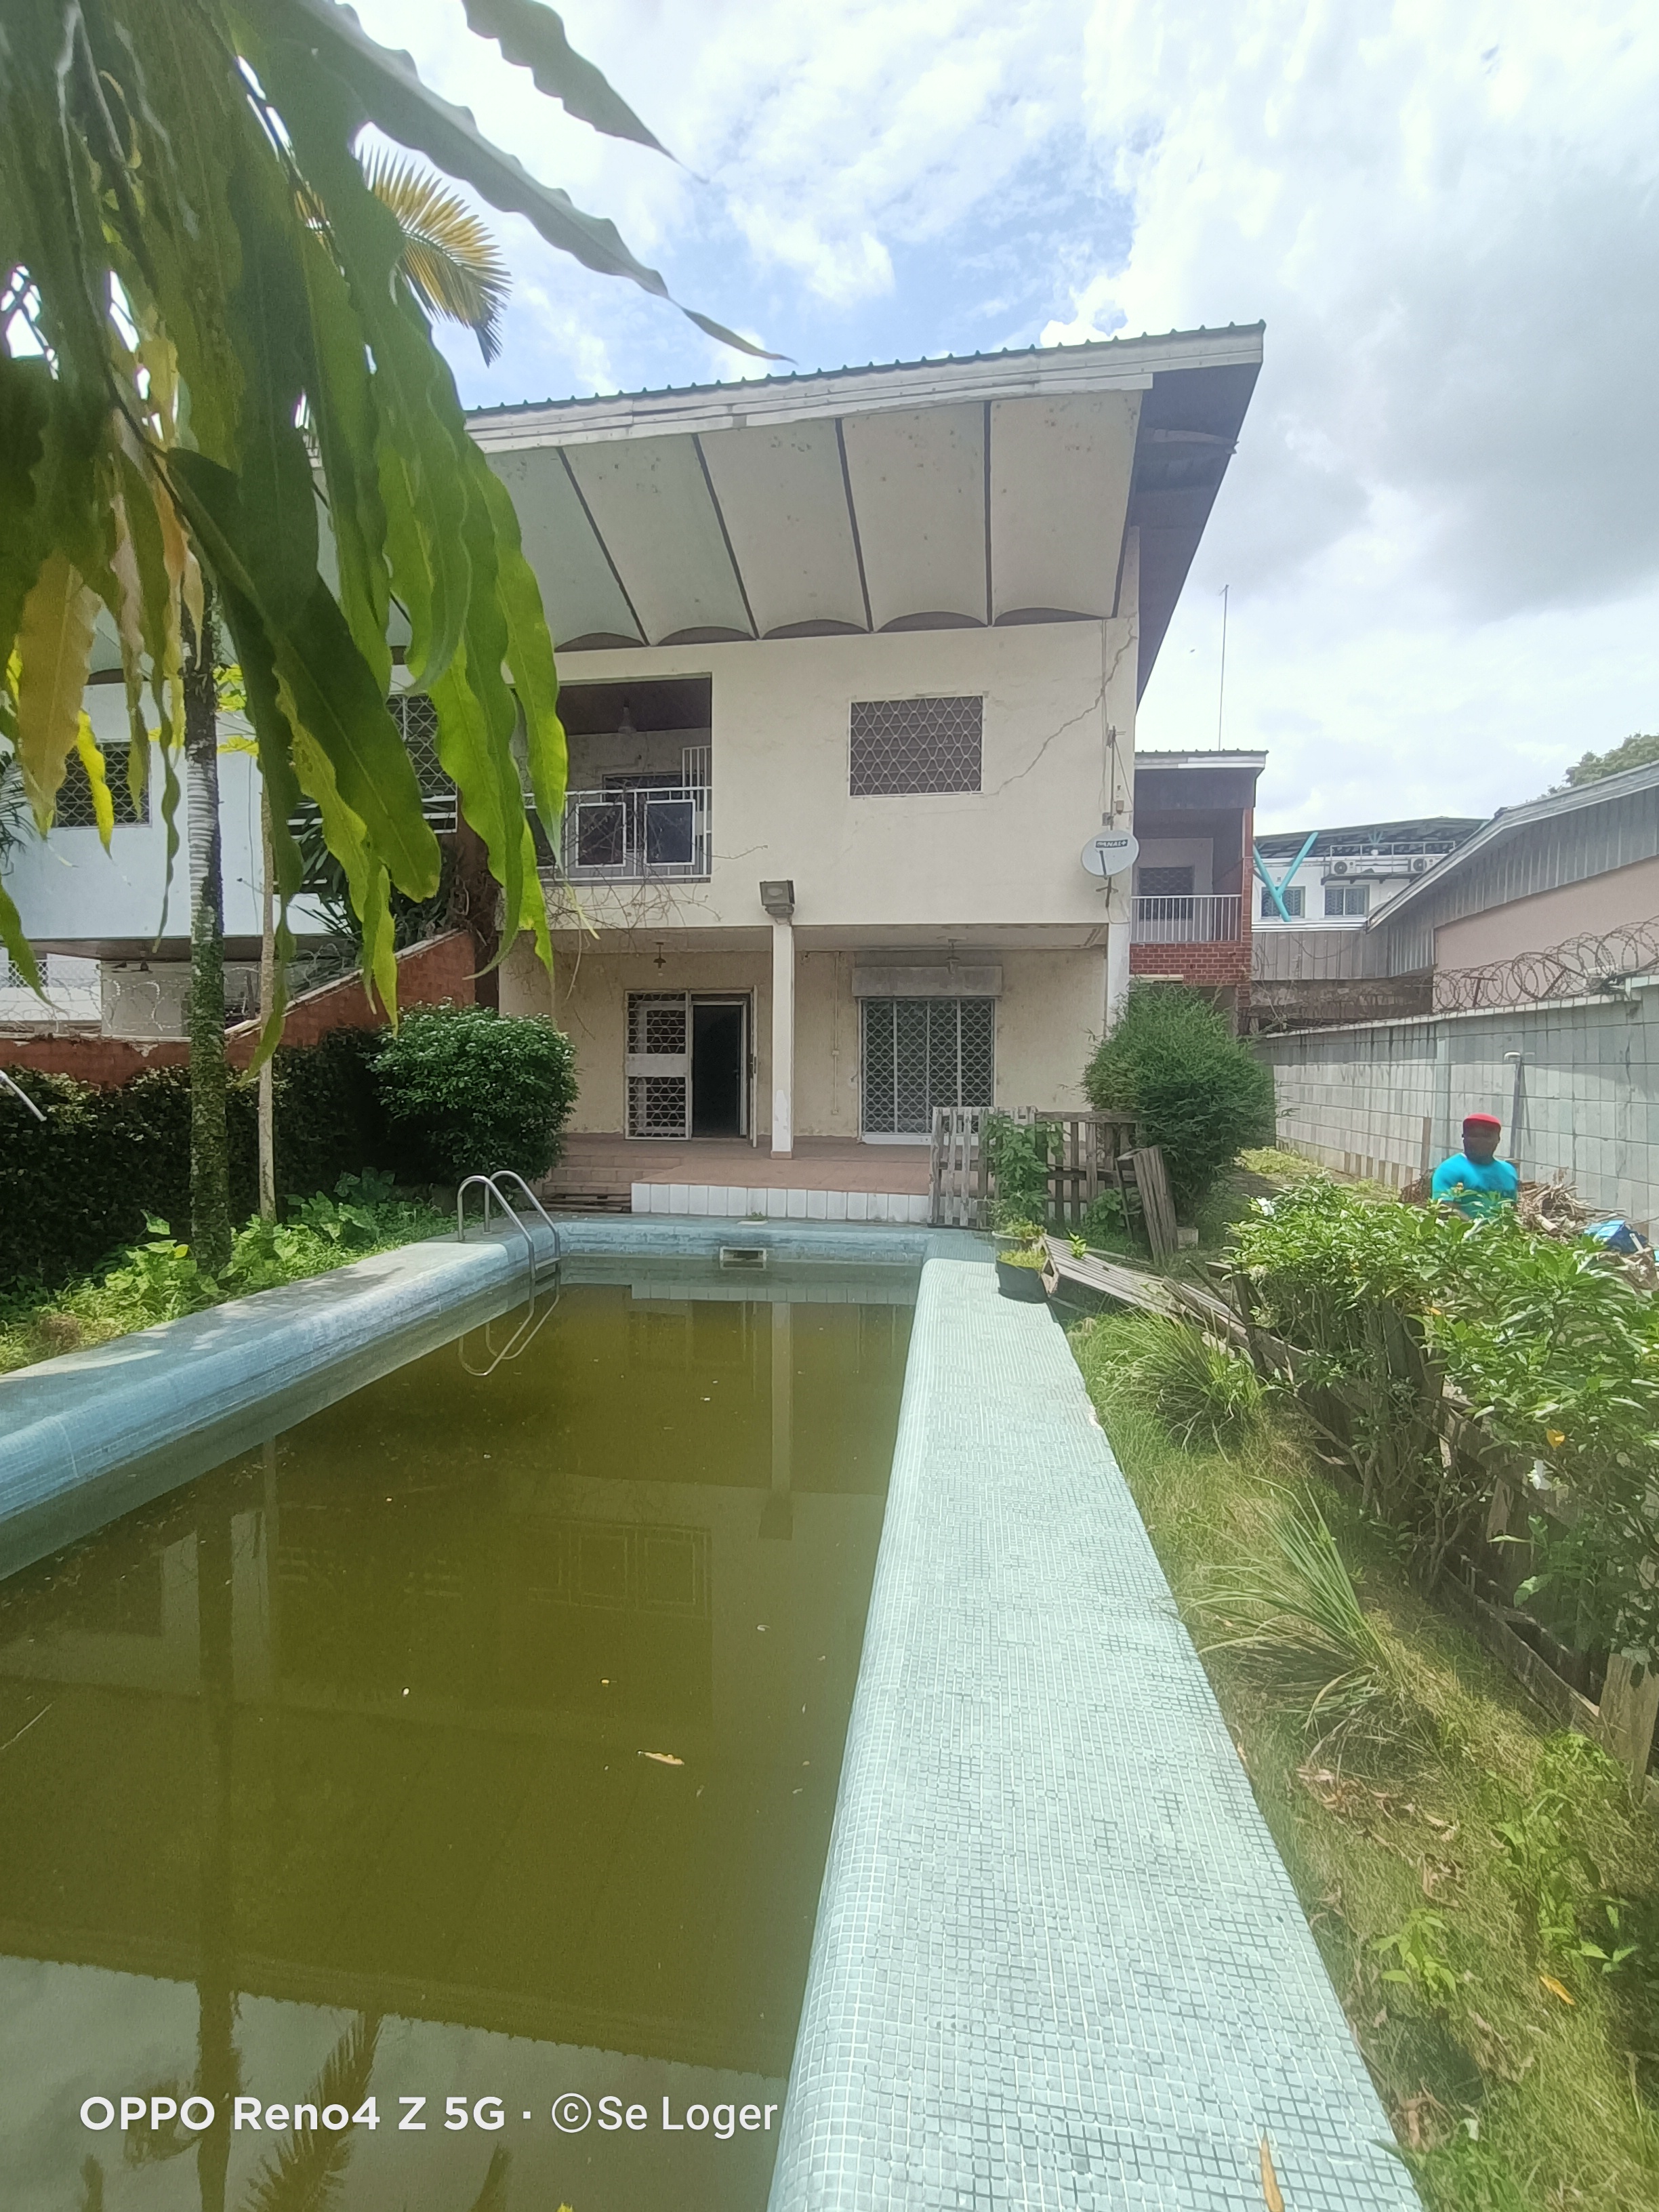 Maison (Duplex) à louer - Douala, Bonapriso, H - 1 salon(s), 5 chambre(s), 3 salle(s) de bains - 2 000 000 FCFA / mois